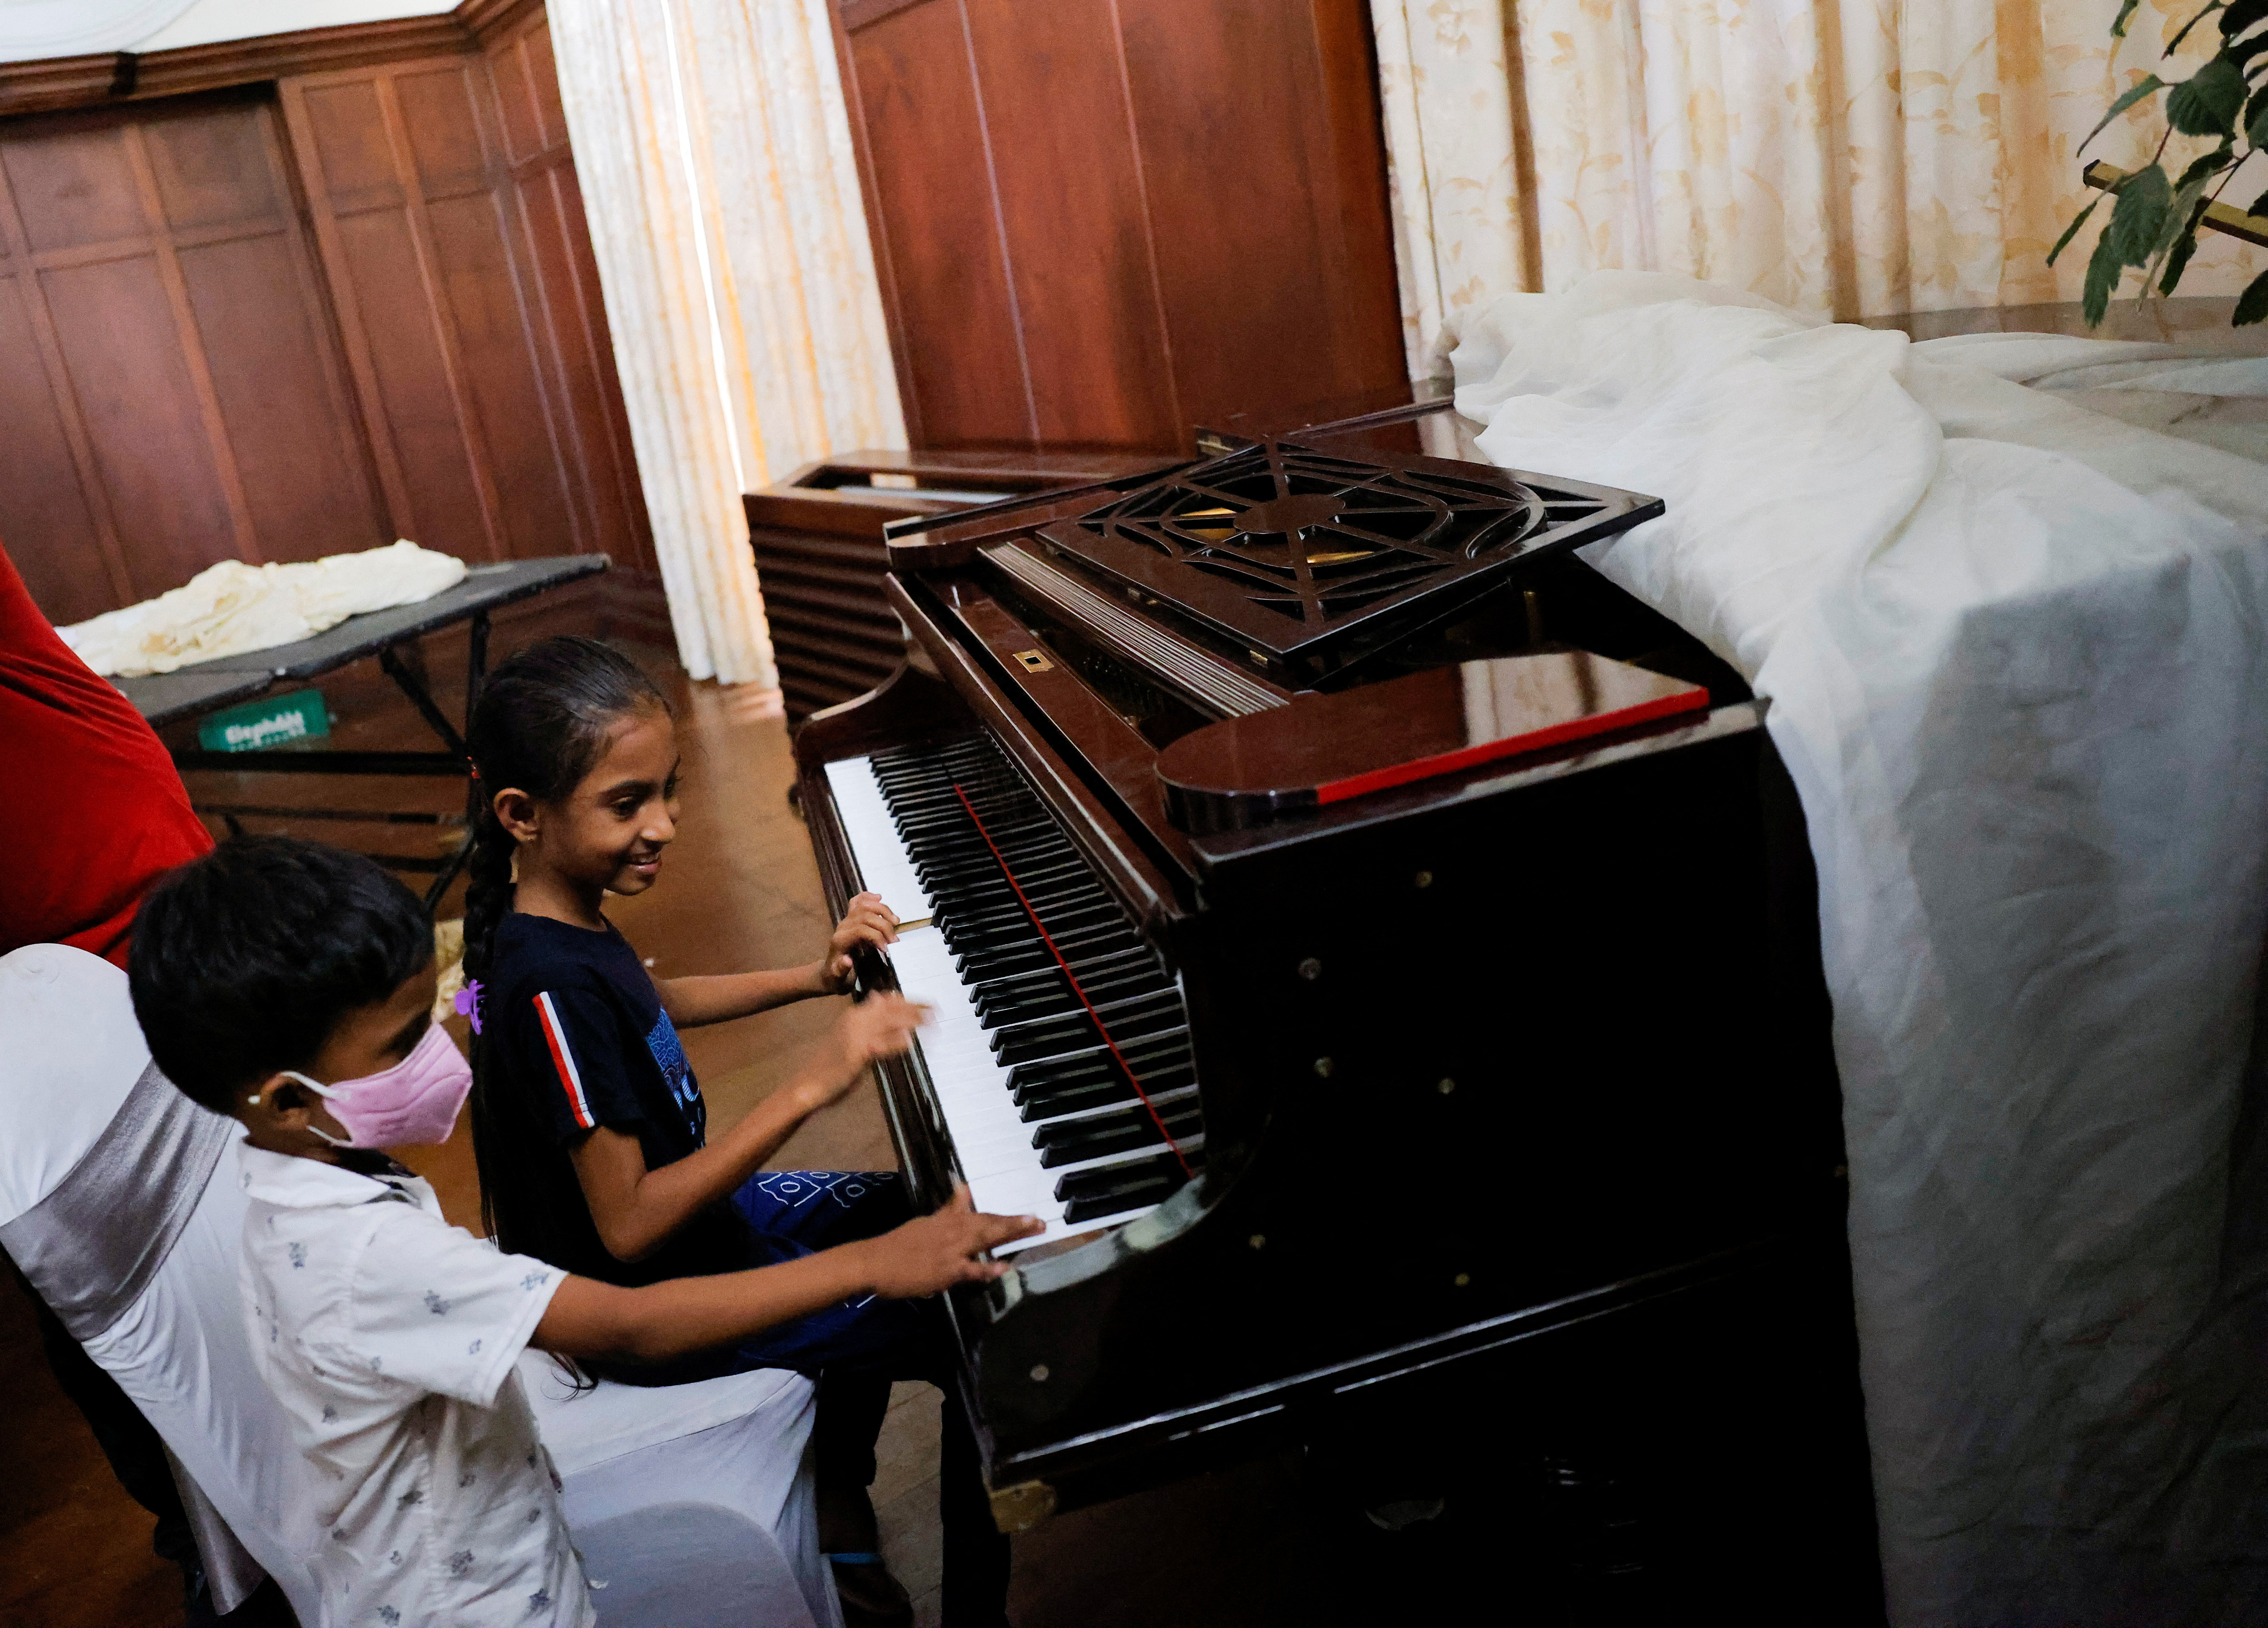 El piano de la residencia del presidente fue uno de los "juguetes" de los niños que ingresaron a la mansión (REUTERS/Dinuka Liyanawatte)